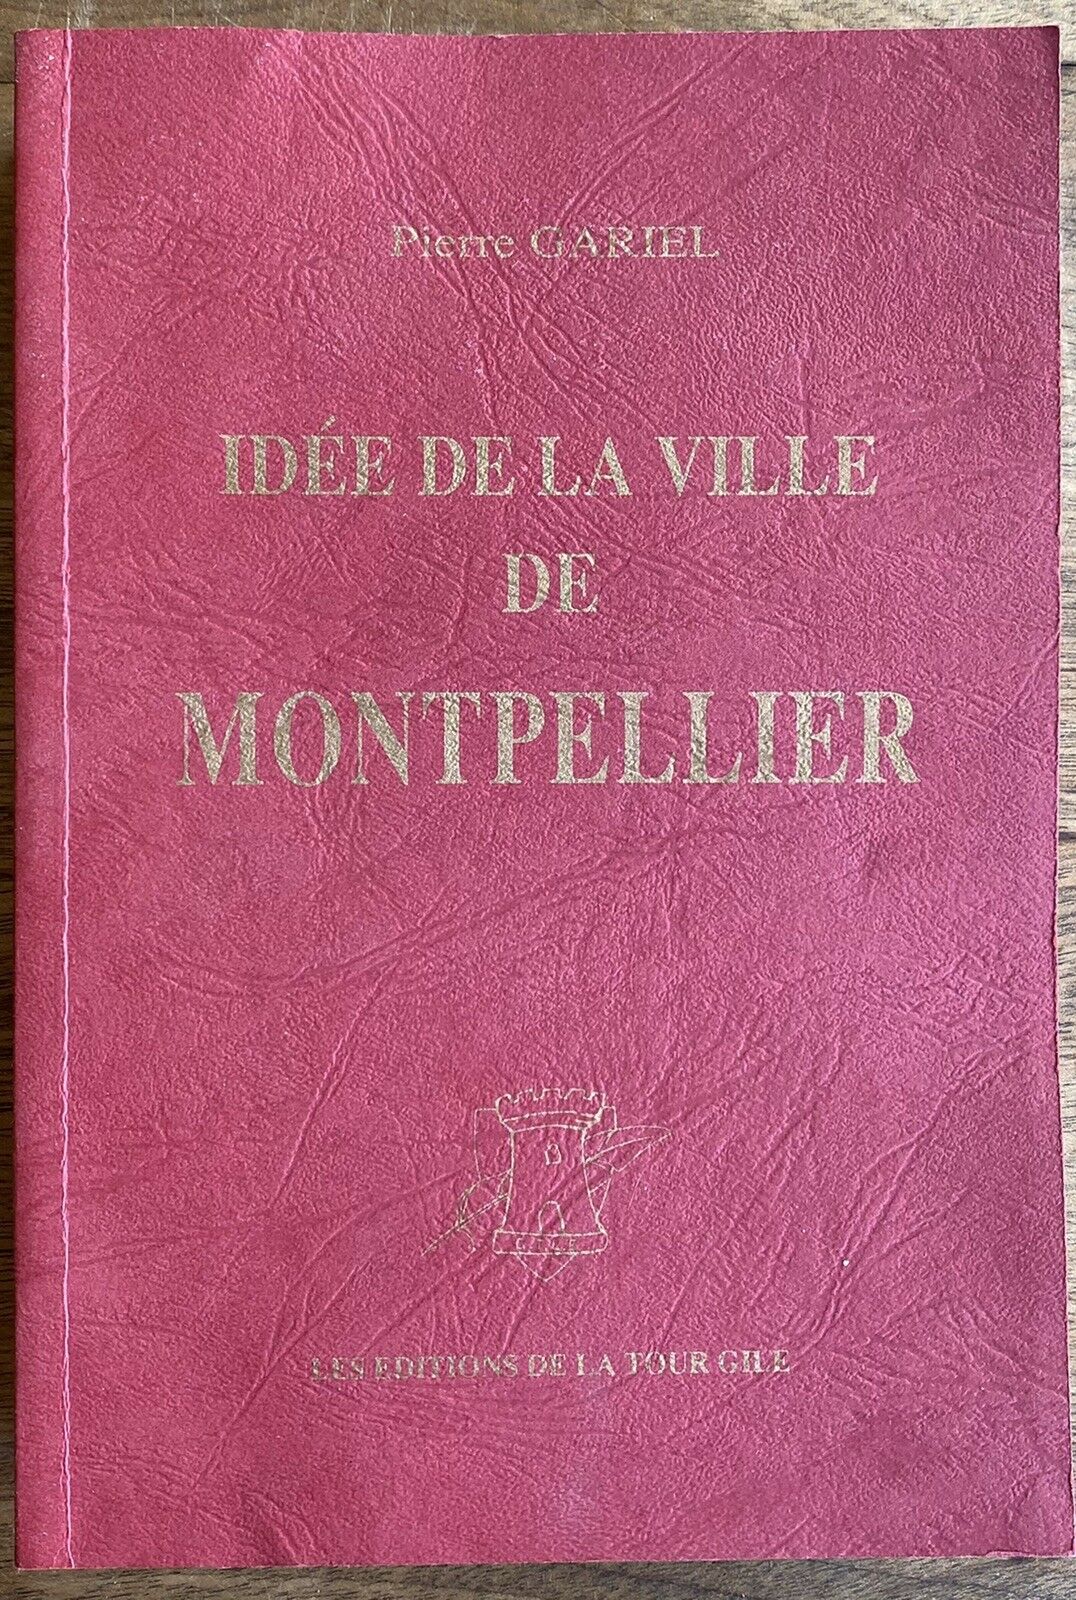 Featured image for “Idée de la ville de Montpellier / Pierre Gariel / Éd. De La Tour Gile / 1993”